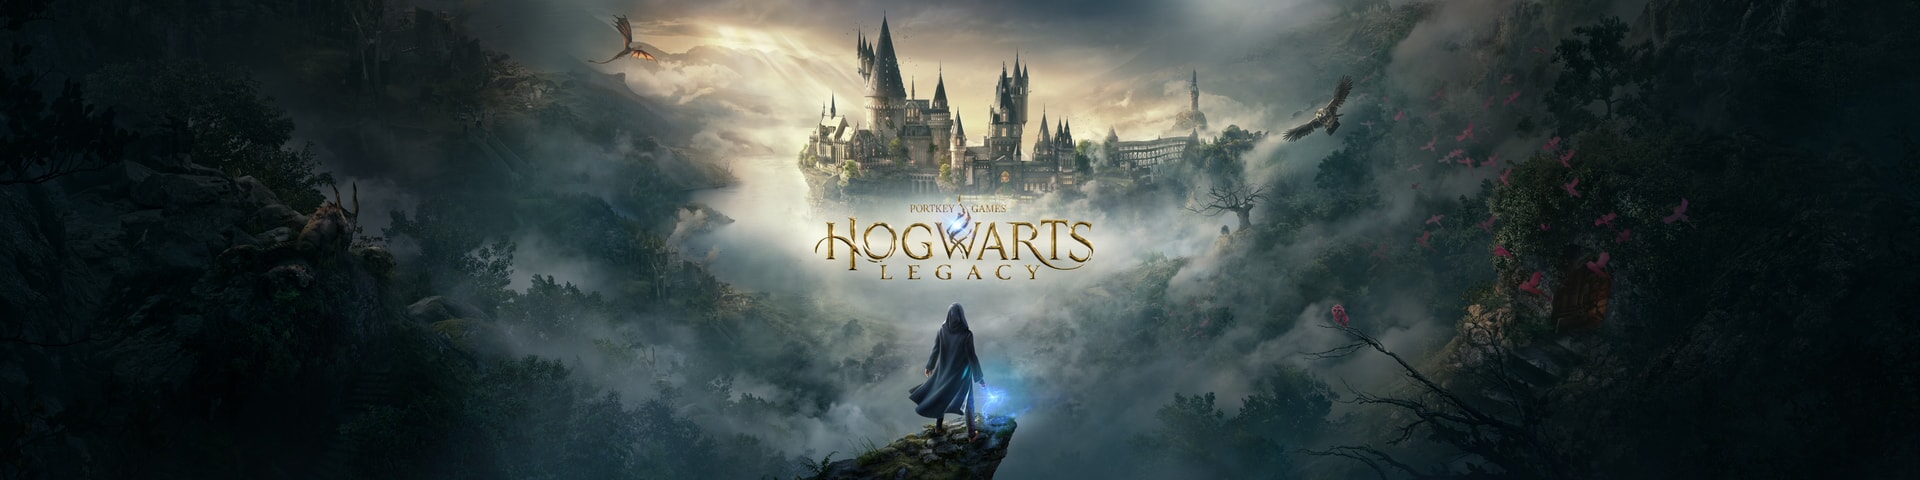 WarnerBros.com.br | Hogwarts Legacy | Games